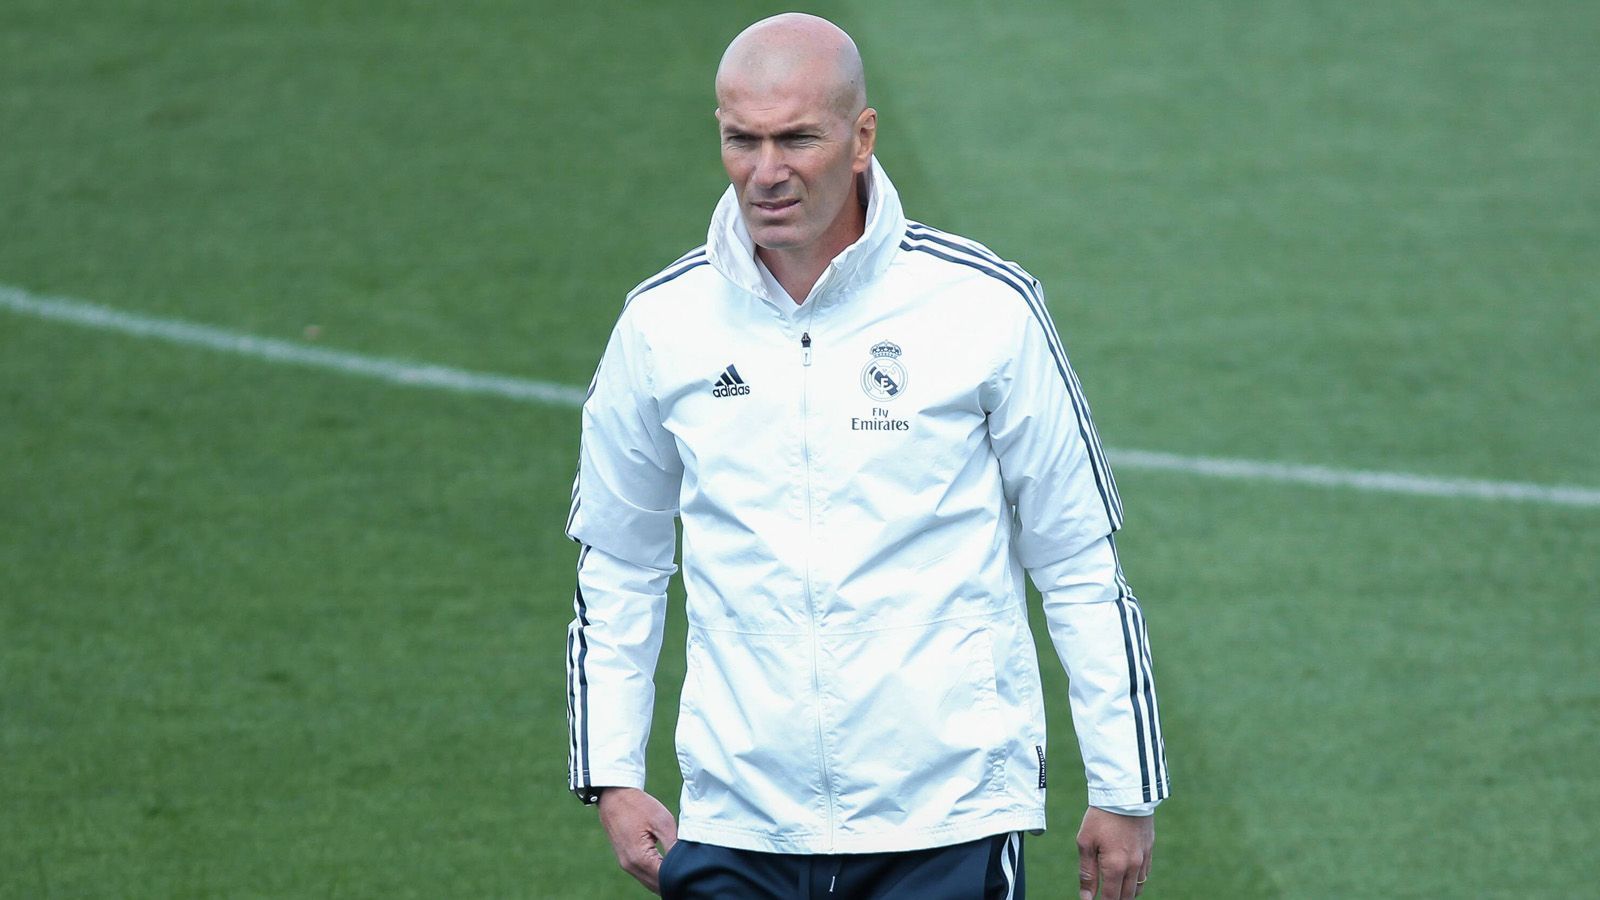 
                <strong>4. Zinedine Zidane (Real Madrid) </strong><br>
                Jahresgehalt: 12 Millionen Euro (Quelle: El Confidencial)Vertrag bis 30. Juni 2022
              